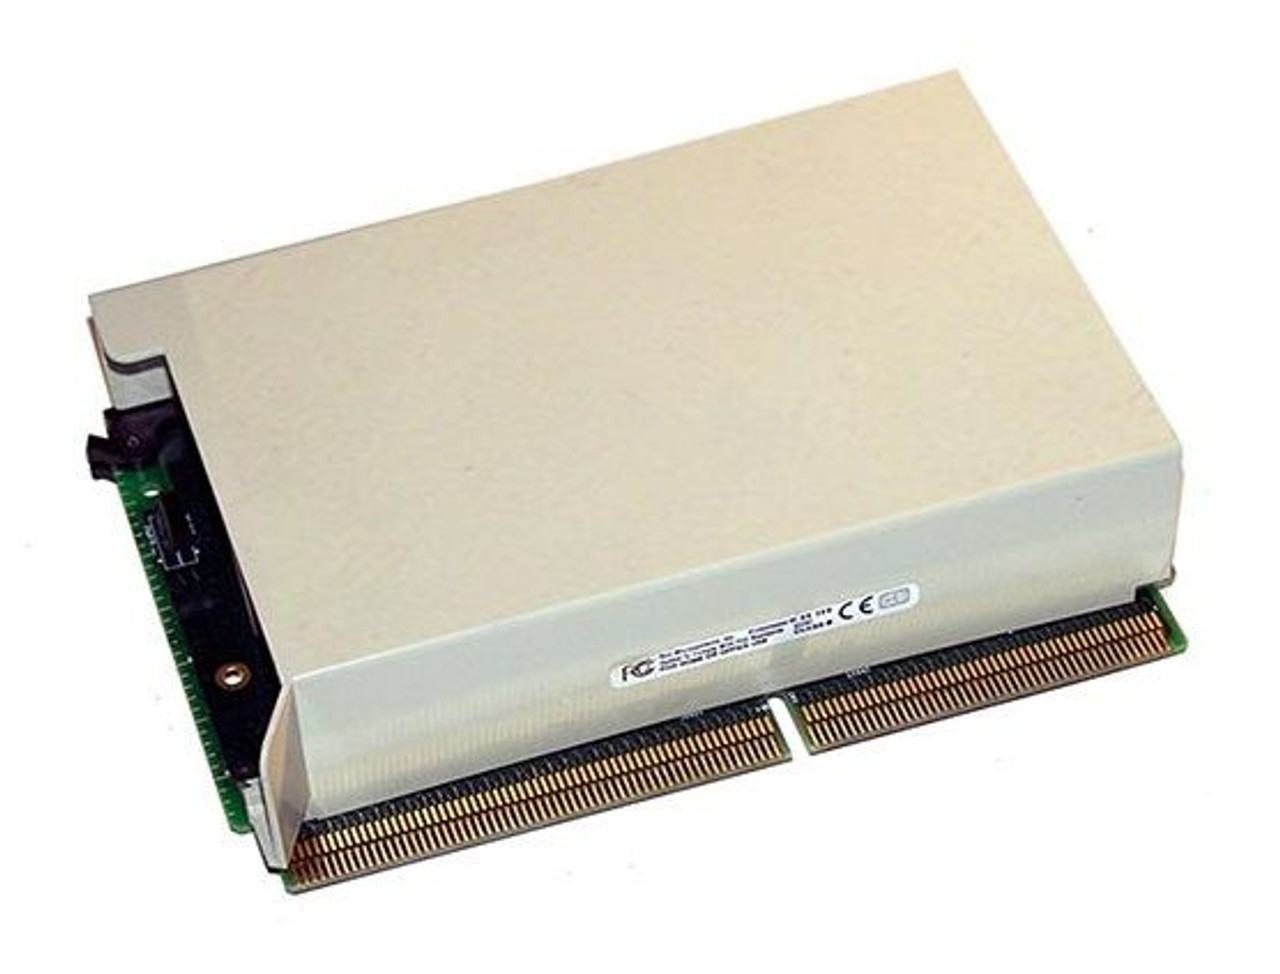 005-048034 | Emc | Cx600 2Gb Storage Processor Board